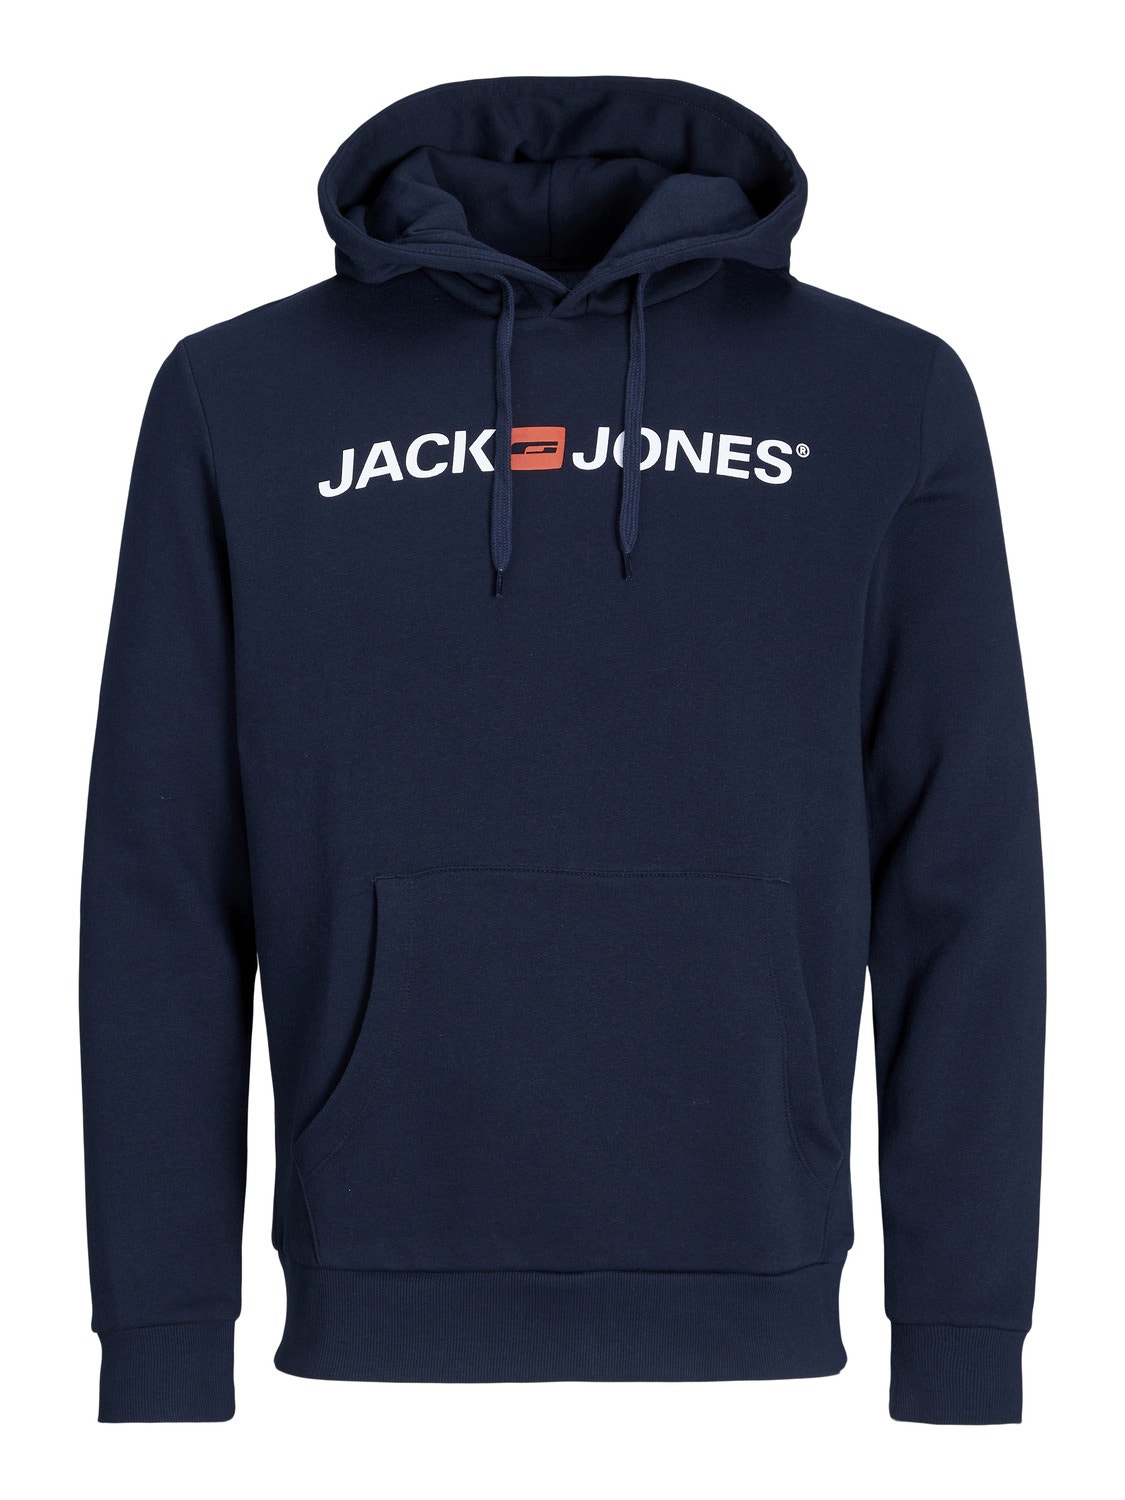 Jack & Jones Logo Mikina s kapucí -Navy Blazer - 12137054